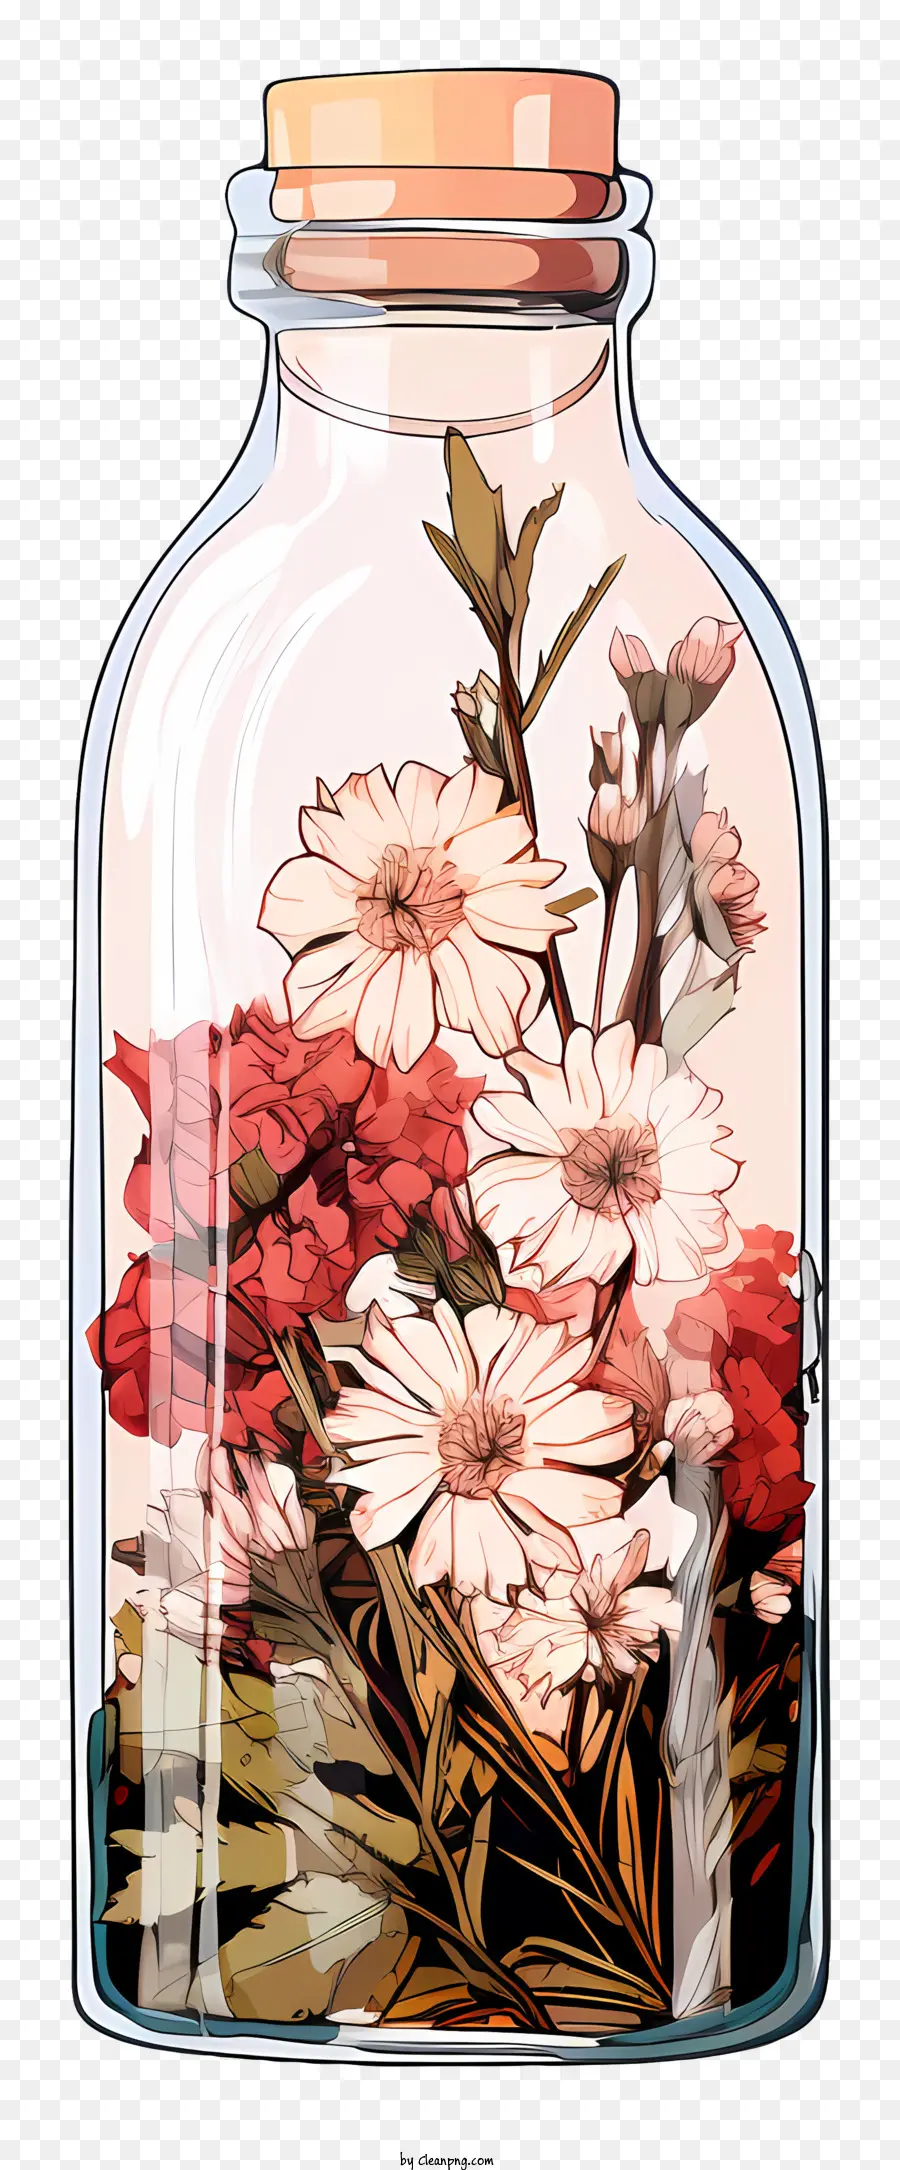 Trockenes Blütenglasglas mit Blumen schwimmende Blumen Minimalistische Blumenarrangement flaches Design Blumenglas - Ein minimalistisches Bild von Blumen in einem Glas